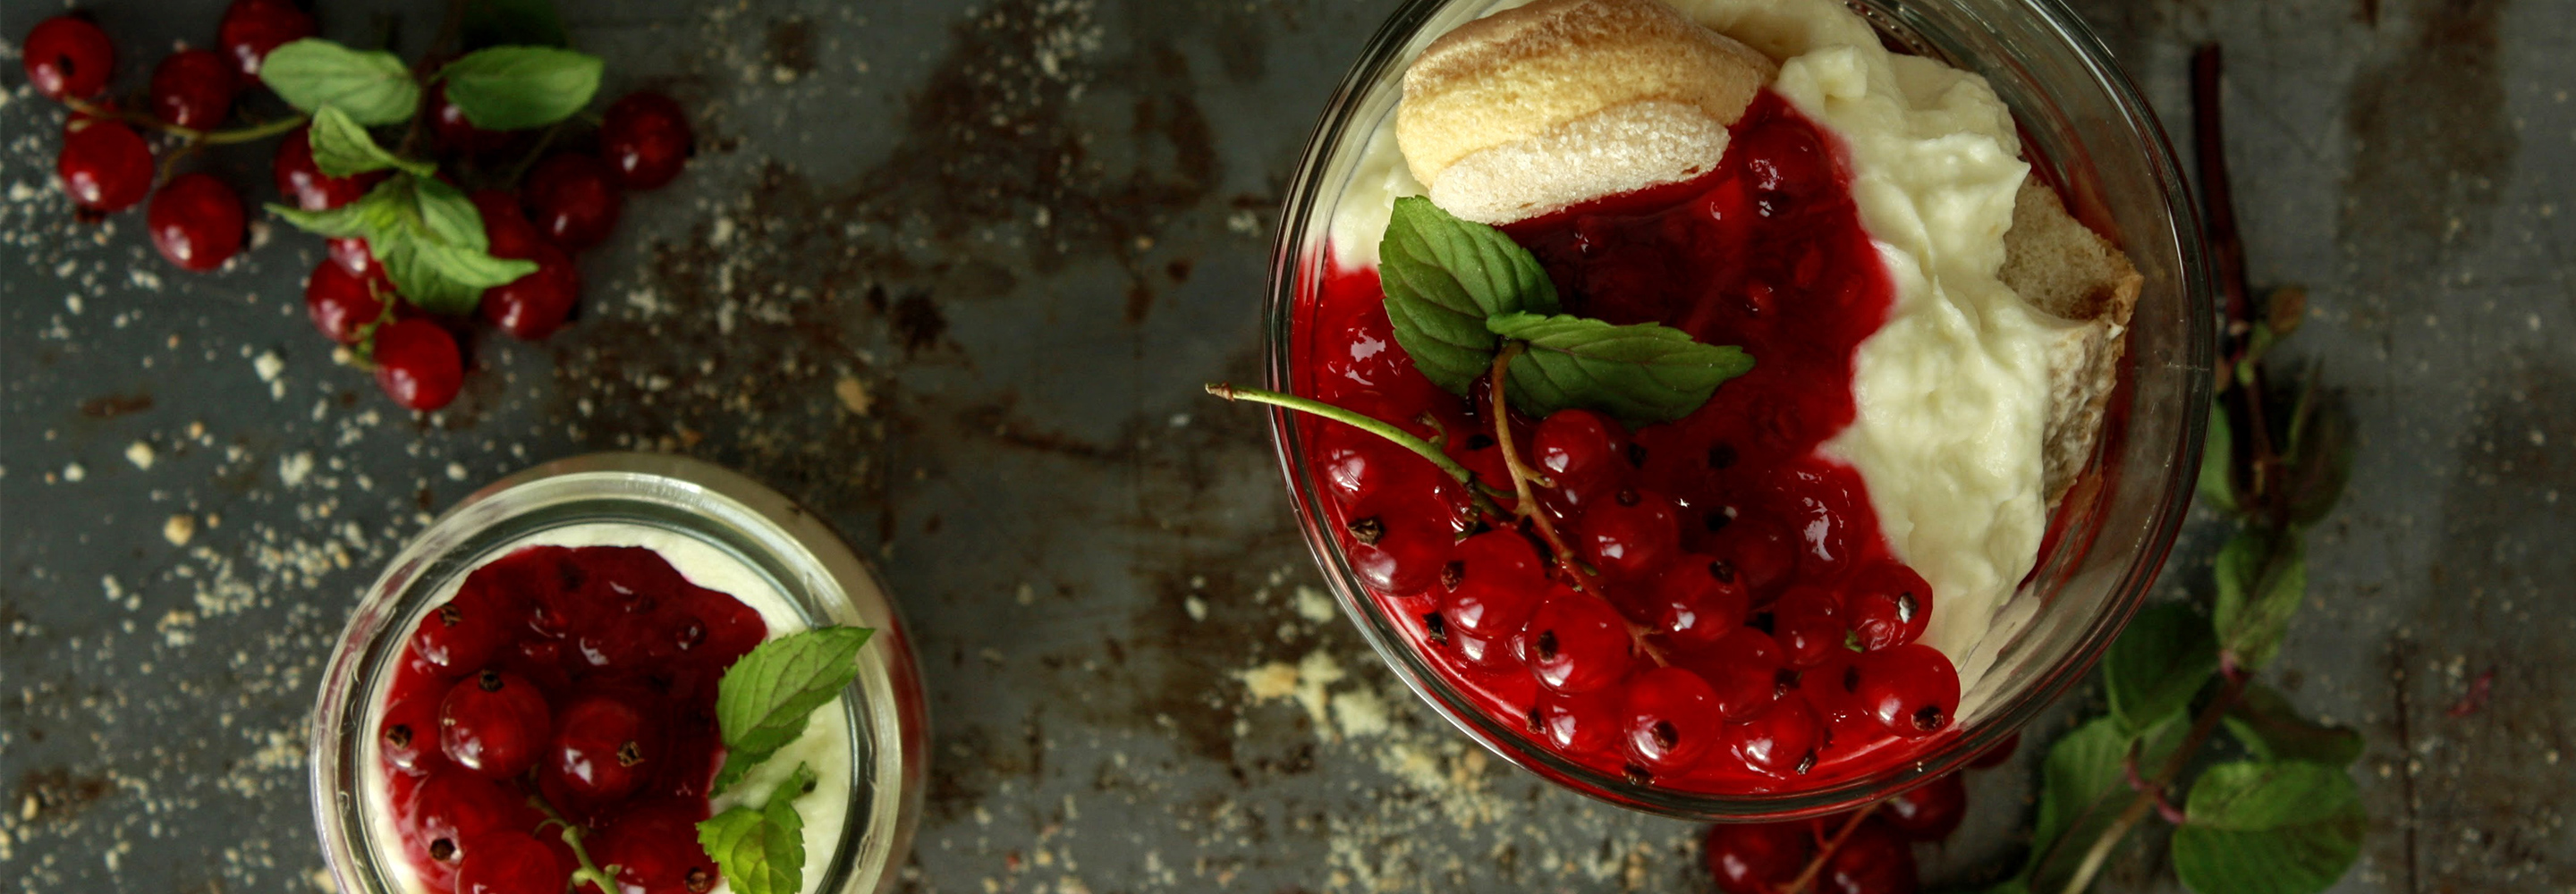 Tiramisu z jagodami, jeżynami i porzeczkami - Galbani – od ponad 140 lat dostarczamy najlepsze włoskie smaki na talerze całego świata